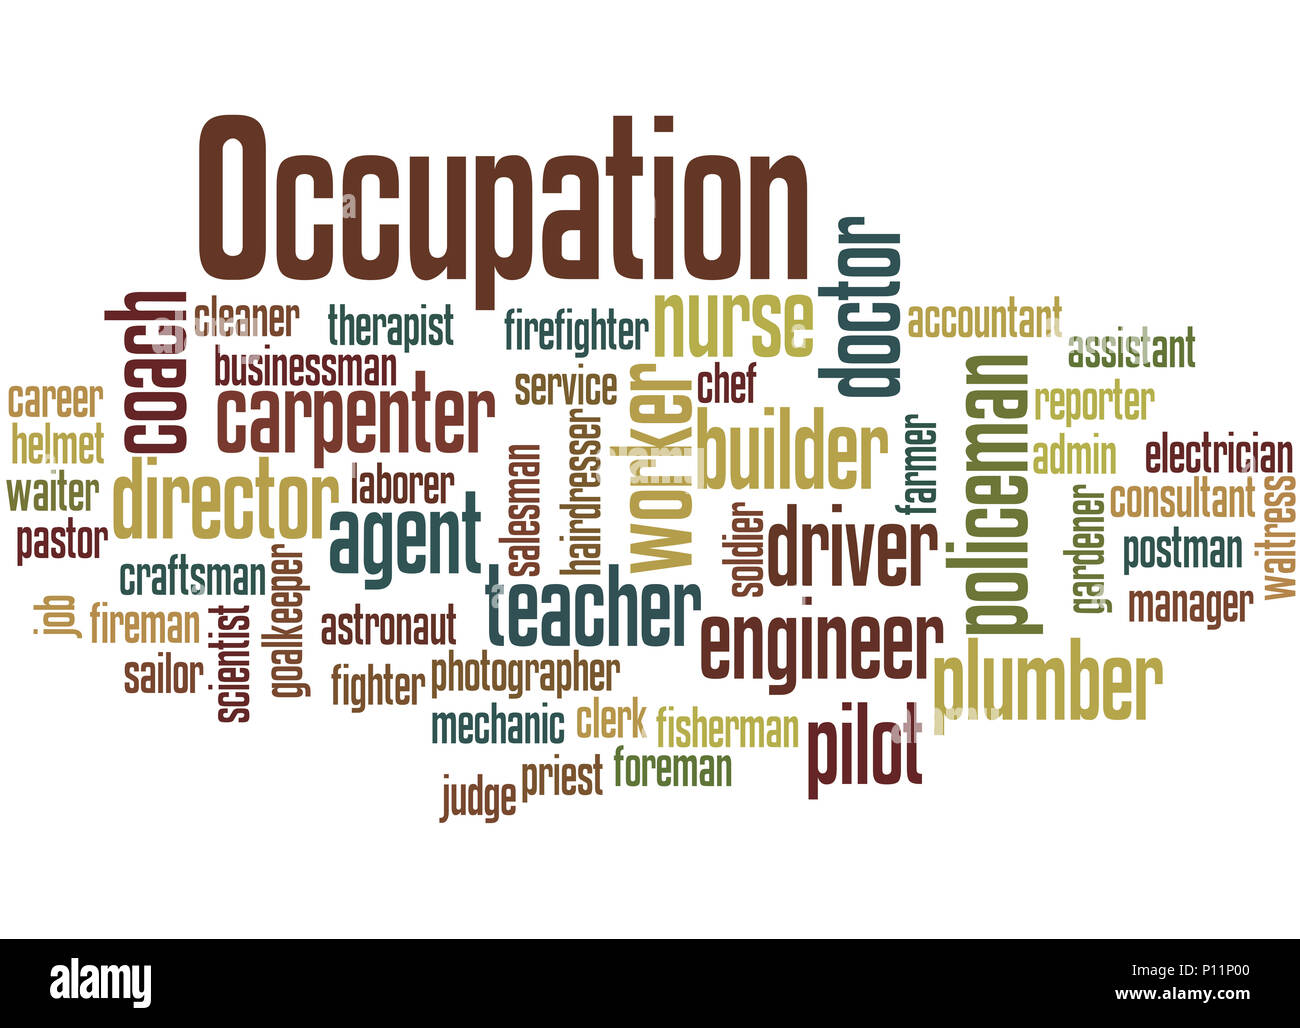 Berufe, verschiedene Jobs, Karriere Auswahl, Beruf word cloud Konzept auf weißem Hintergrund. Stockfoto